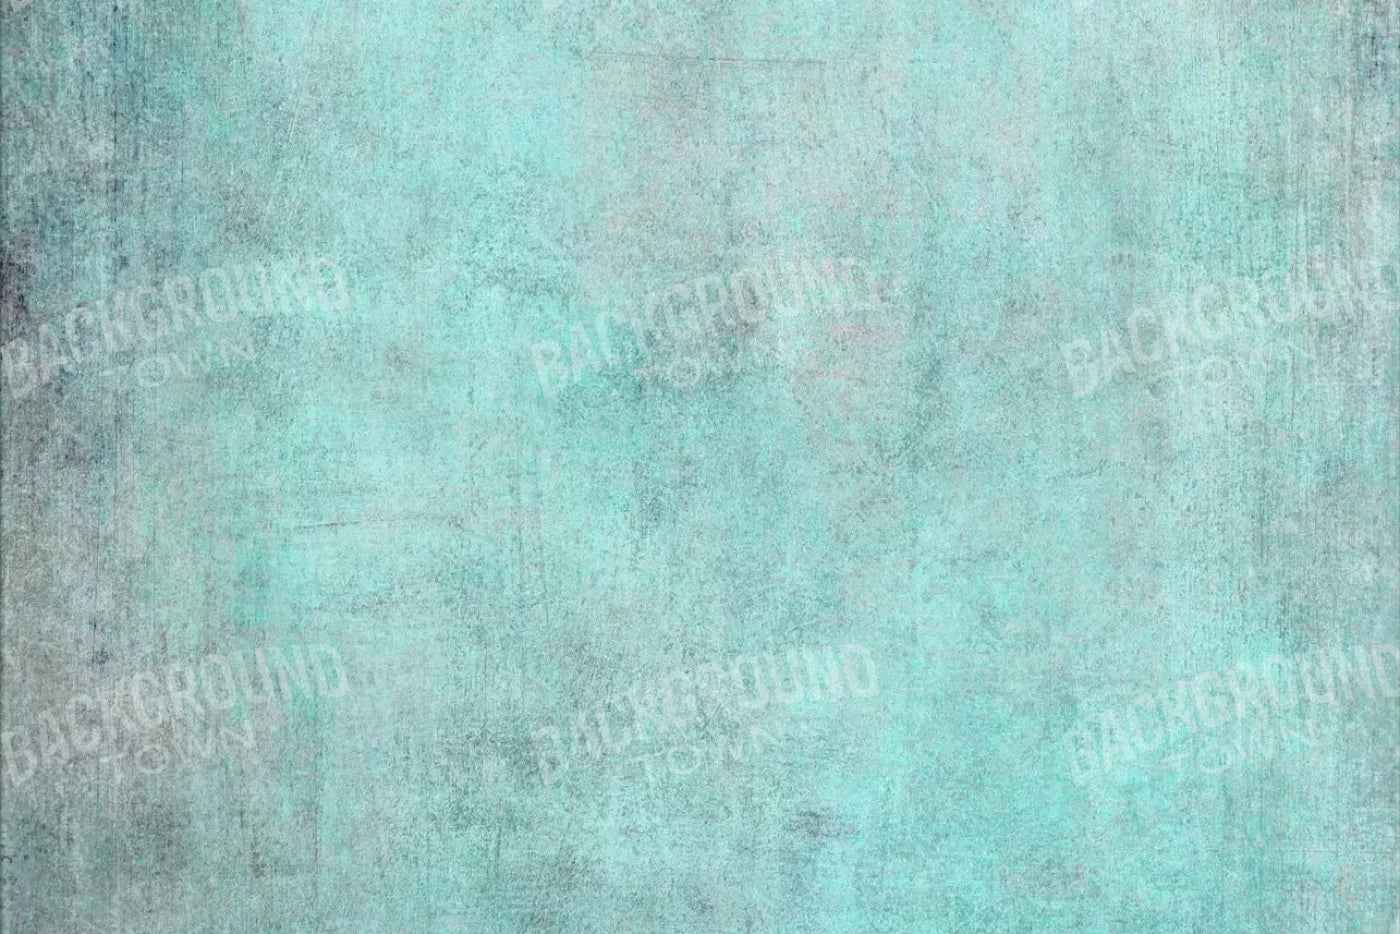 Grunge Seafoam 8X5 Ultracloth ( 96 X 60 Inch ) Backdrop